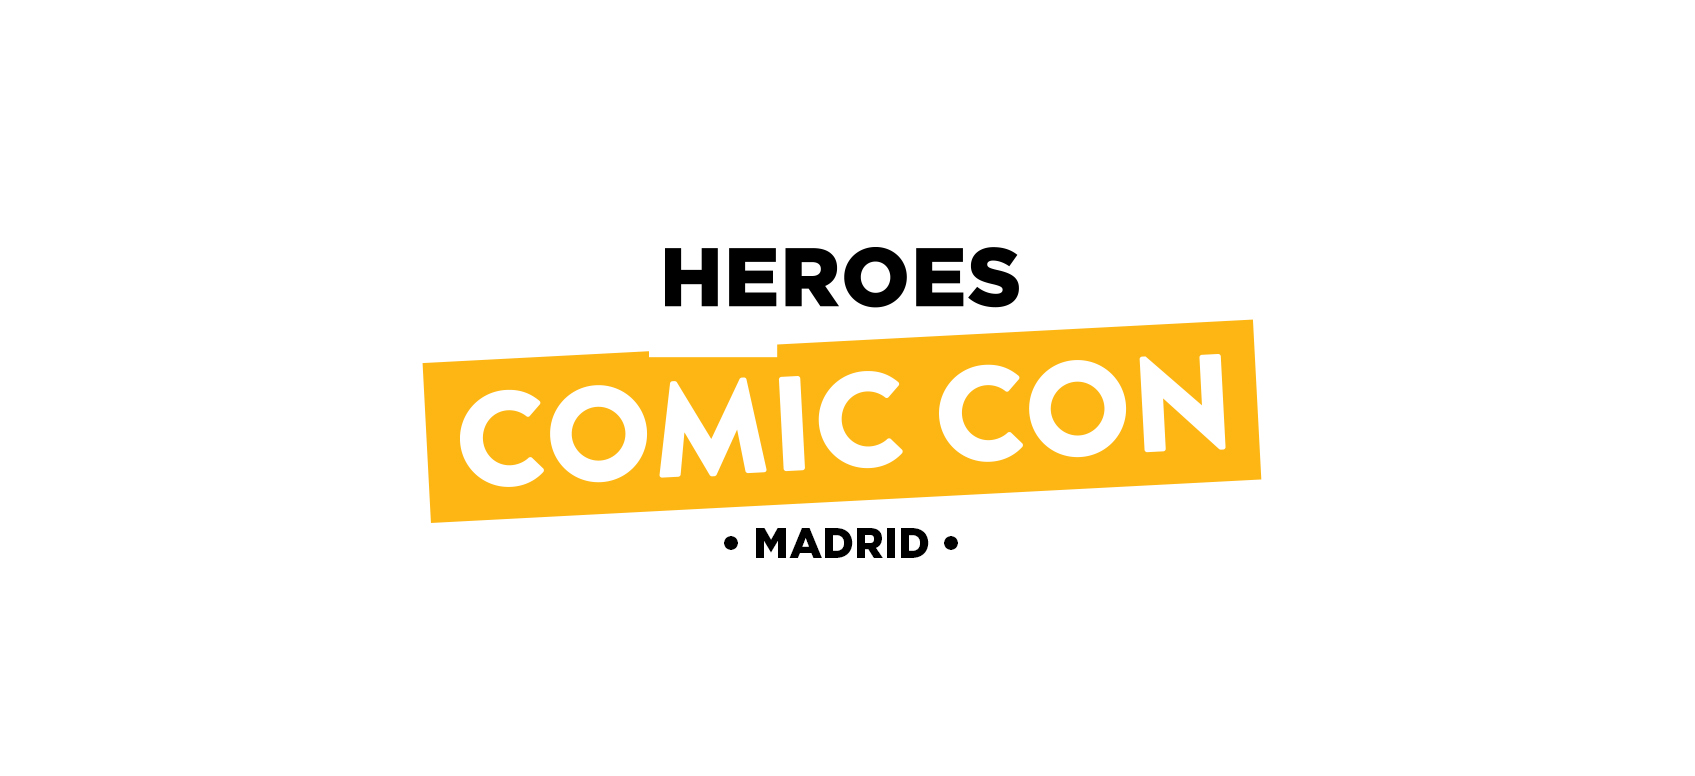 Primeros invitados para Heroes Comic Con Madrid 2018